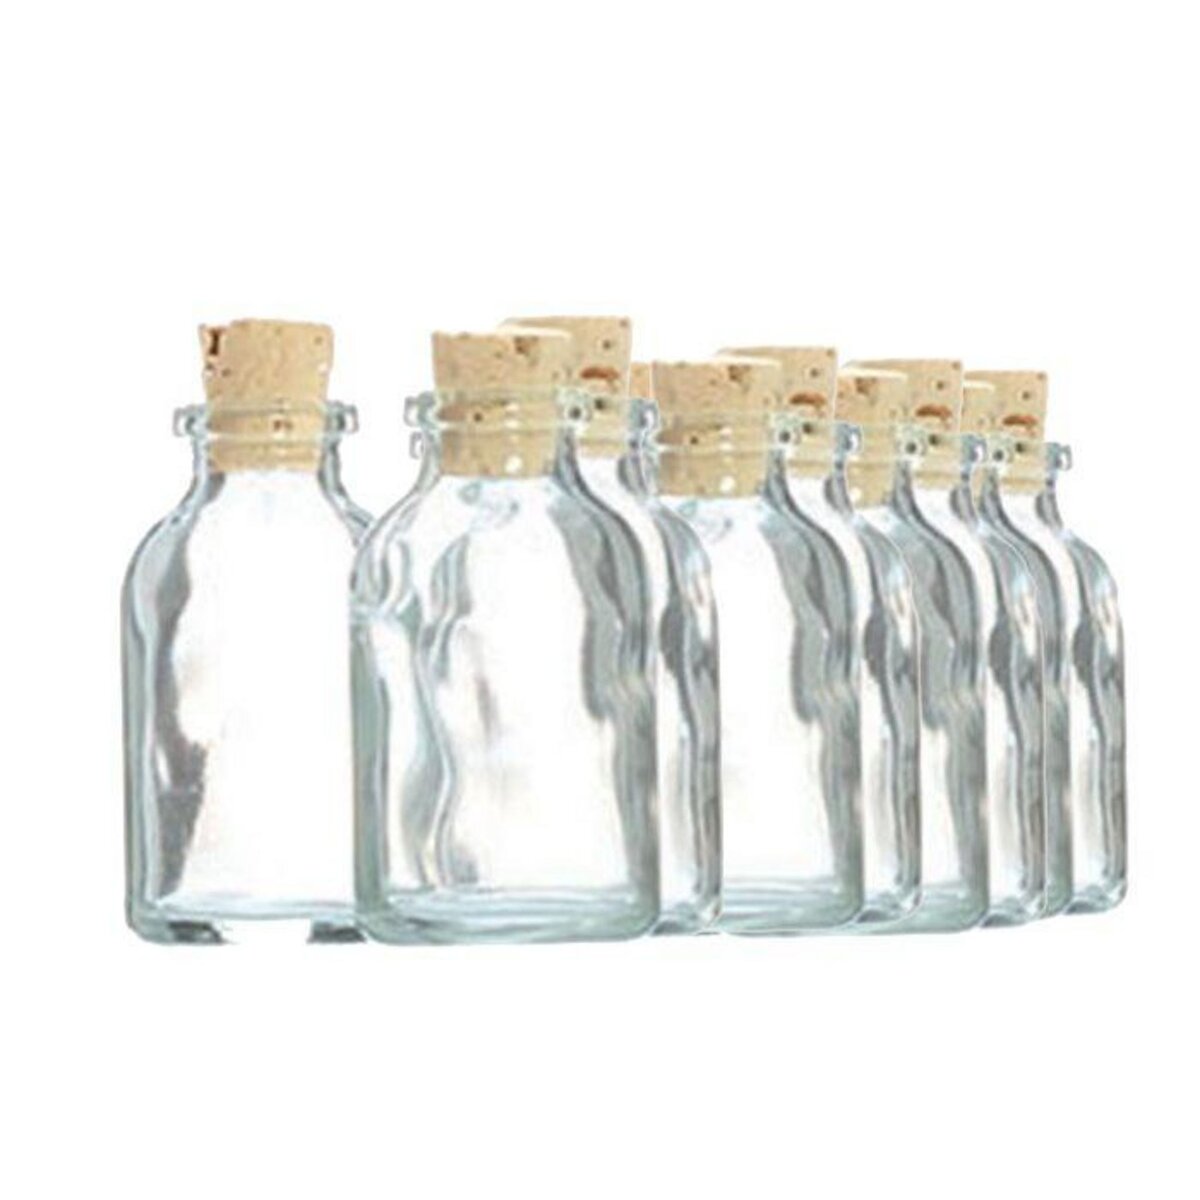 Graine créative 50 mini bouteilles en verre 6 cm avec bouchon liège